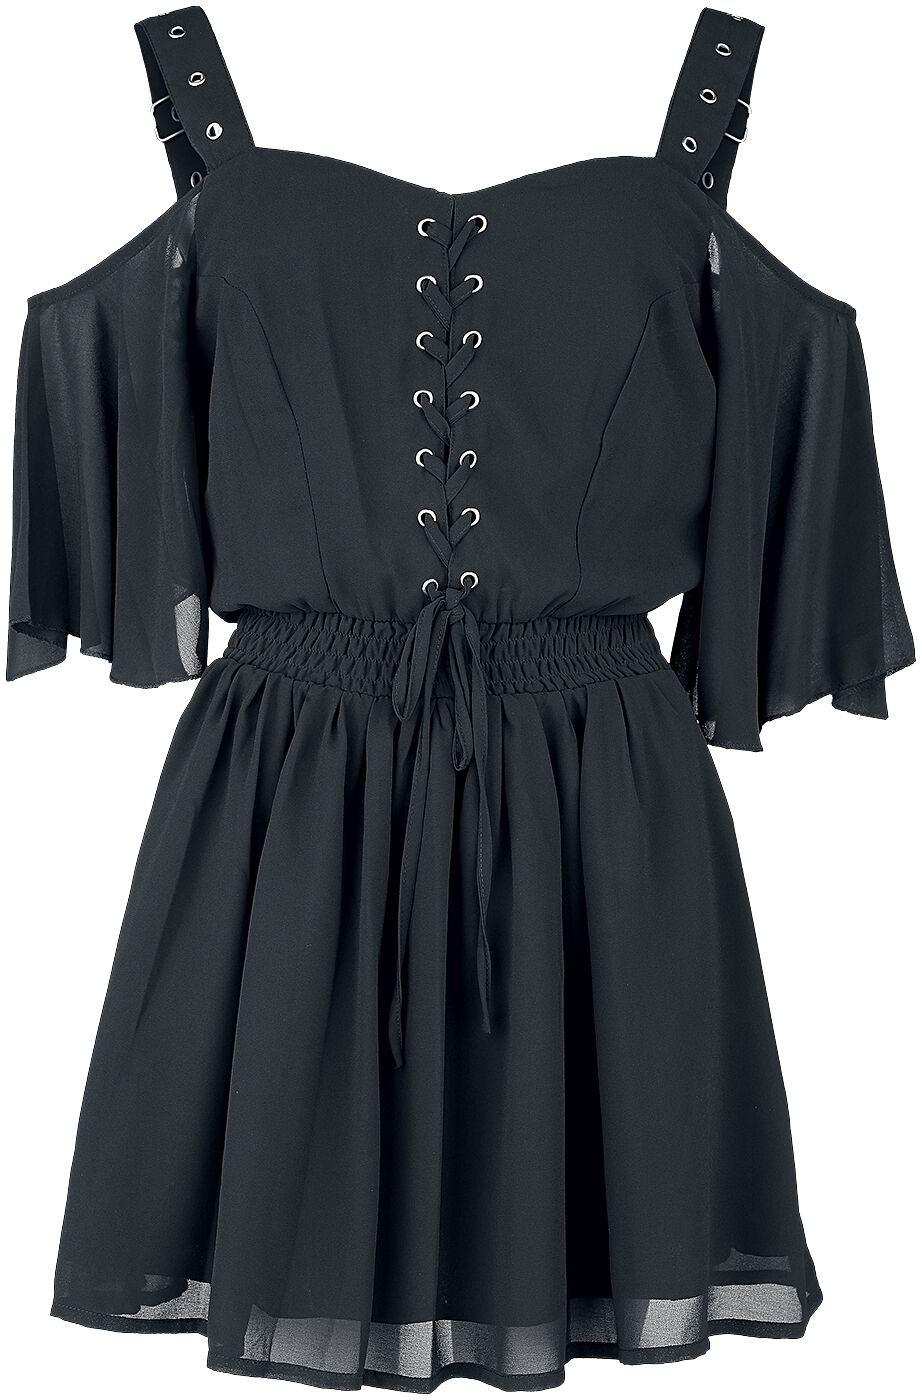 Poizen Industries - Gothic Kurzes Kleid - Catastrophe Dress - XS bis 4XL - für Damen - Größe M - schwarz